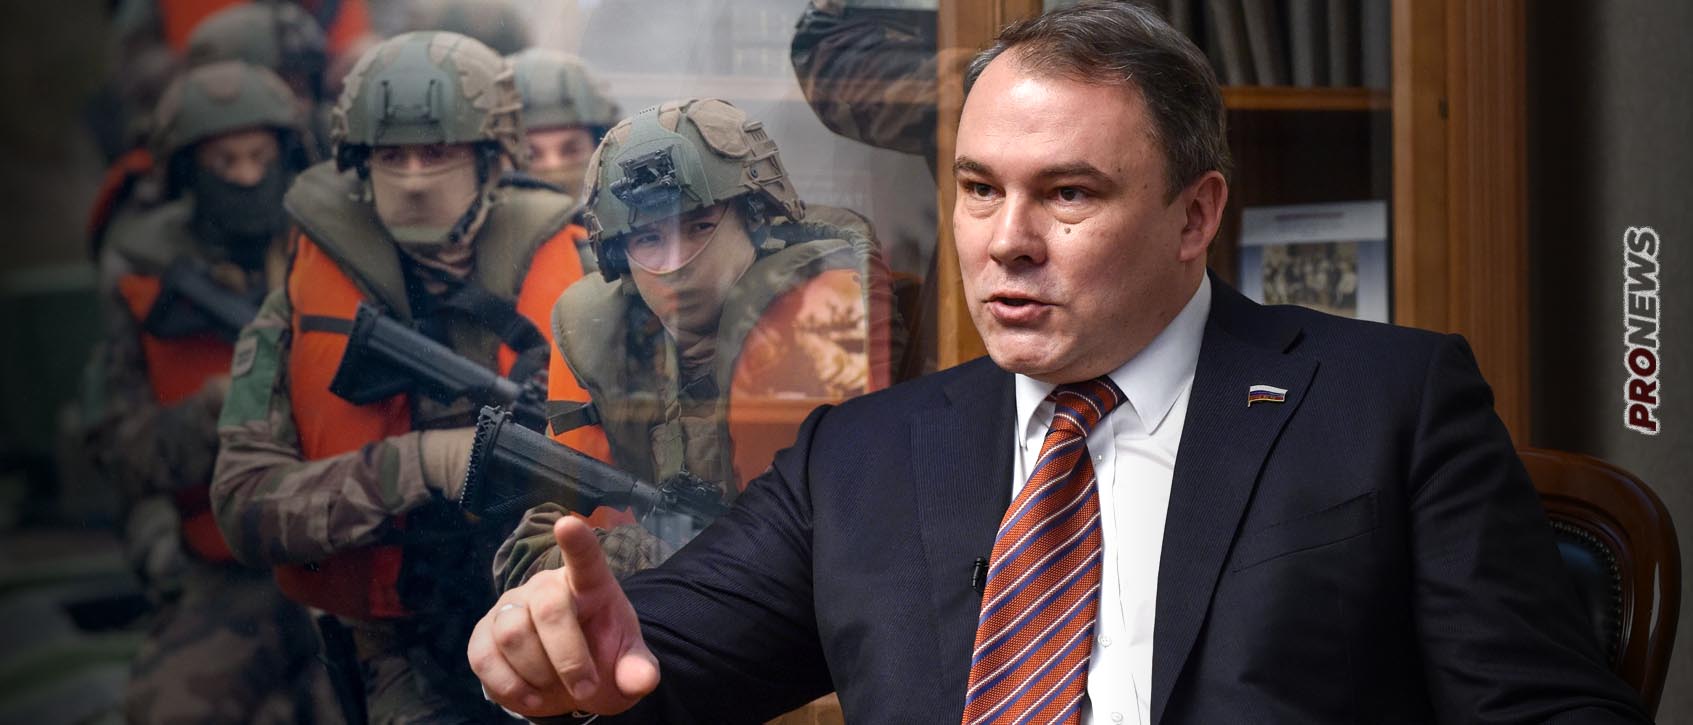 Αντιπρόεδρος της ρωσικής Δούμας: «Θα σκοτώσουμε όλους τους Γάλλους στρατιώτες που έρχονται στο ουκρανικό έδαφος»